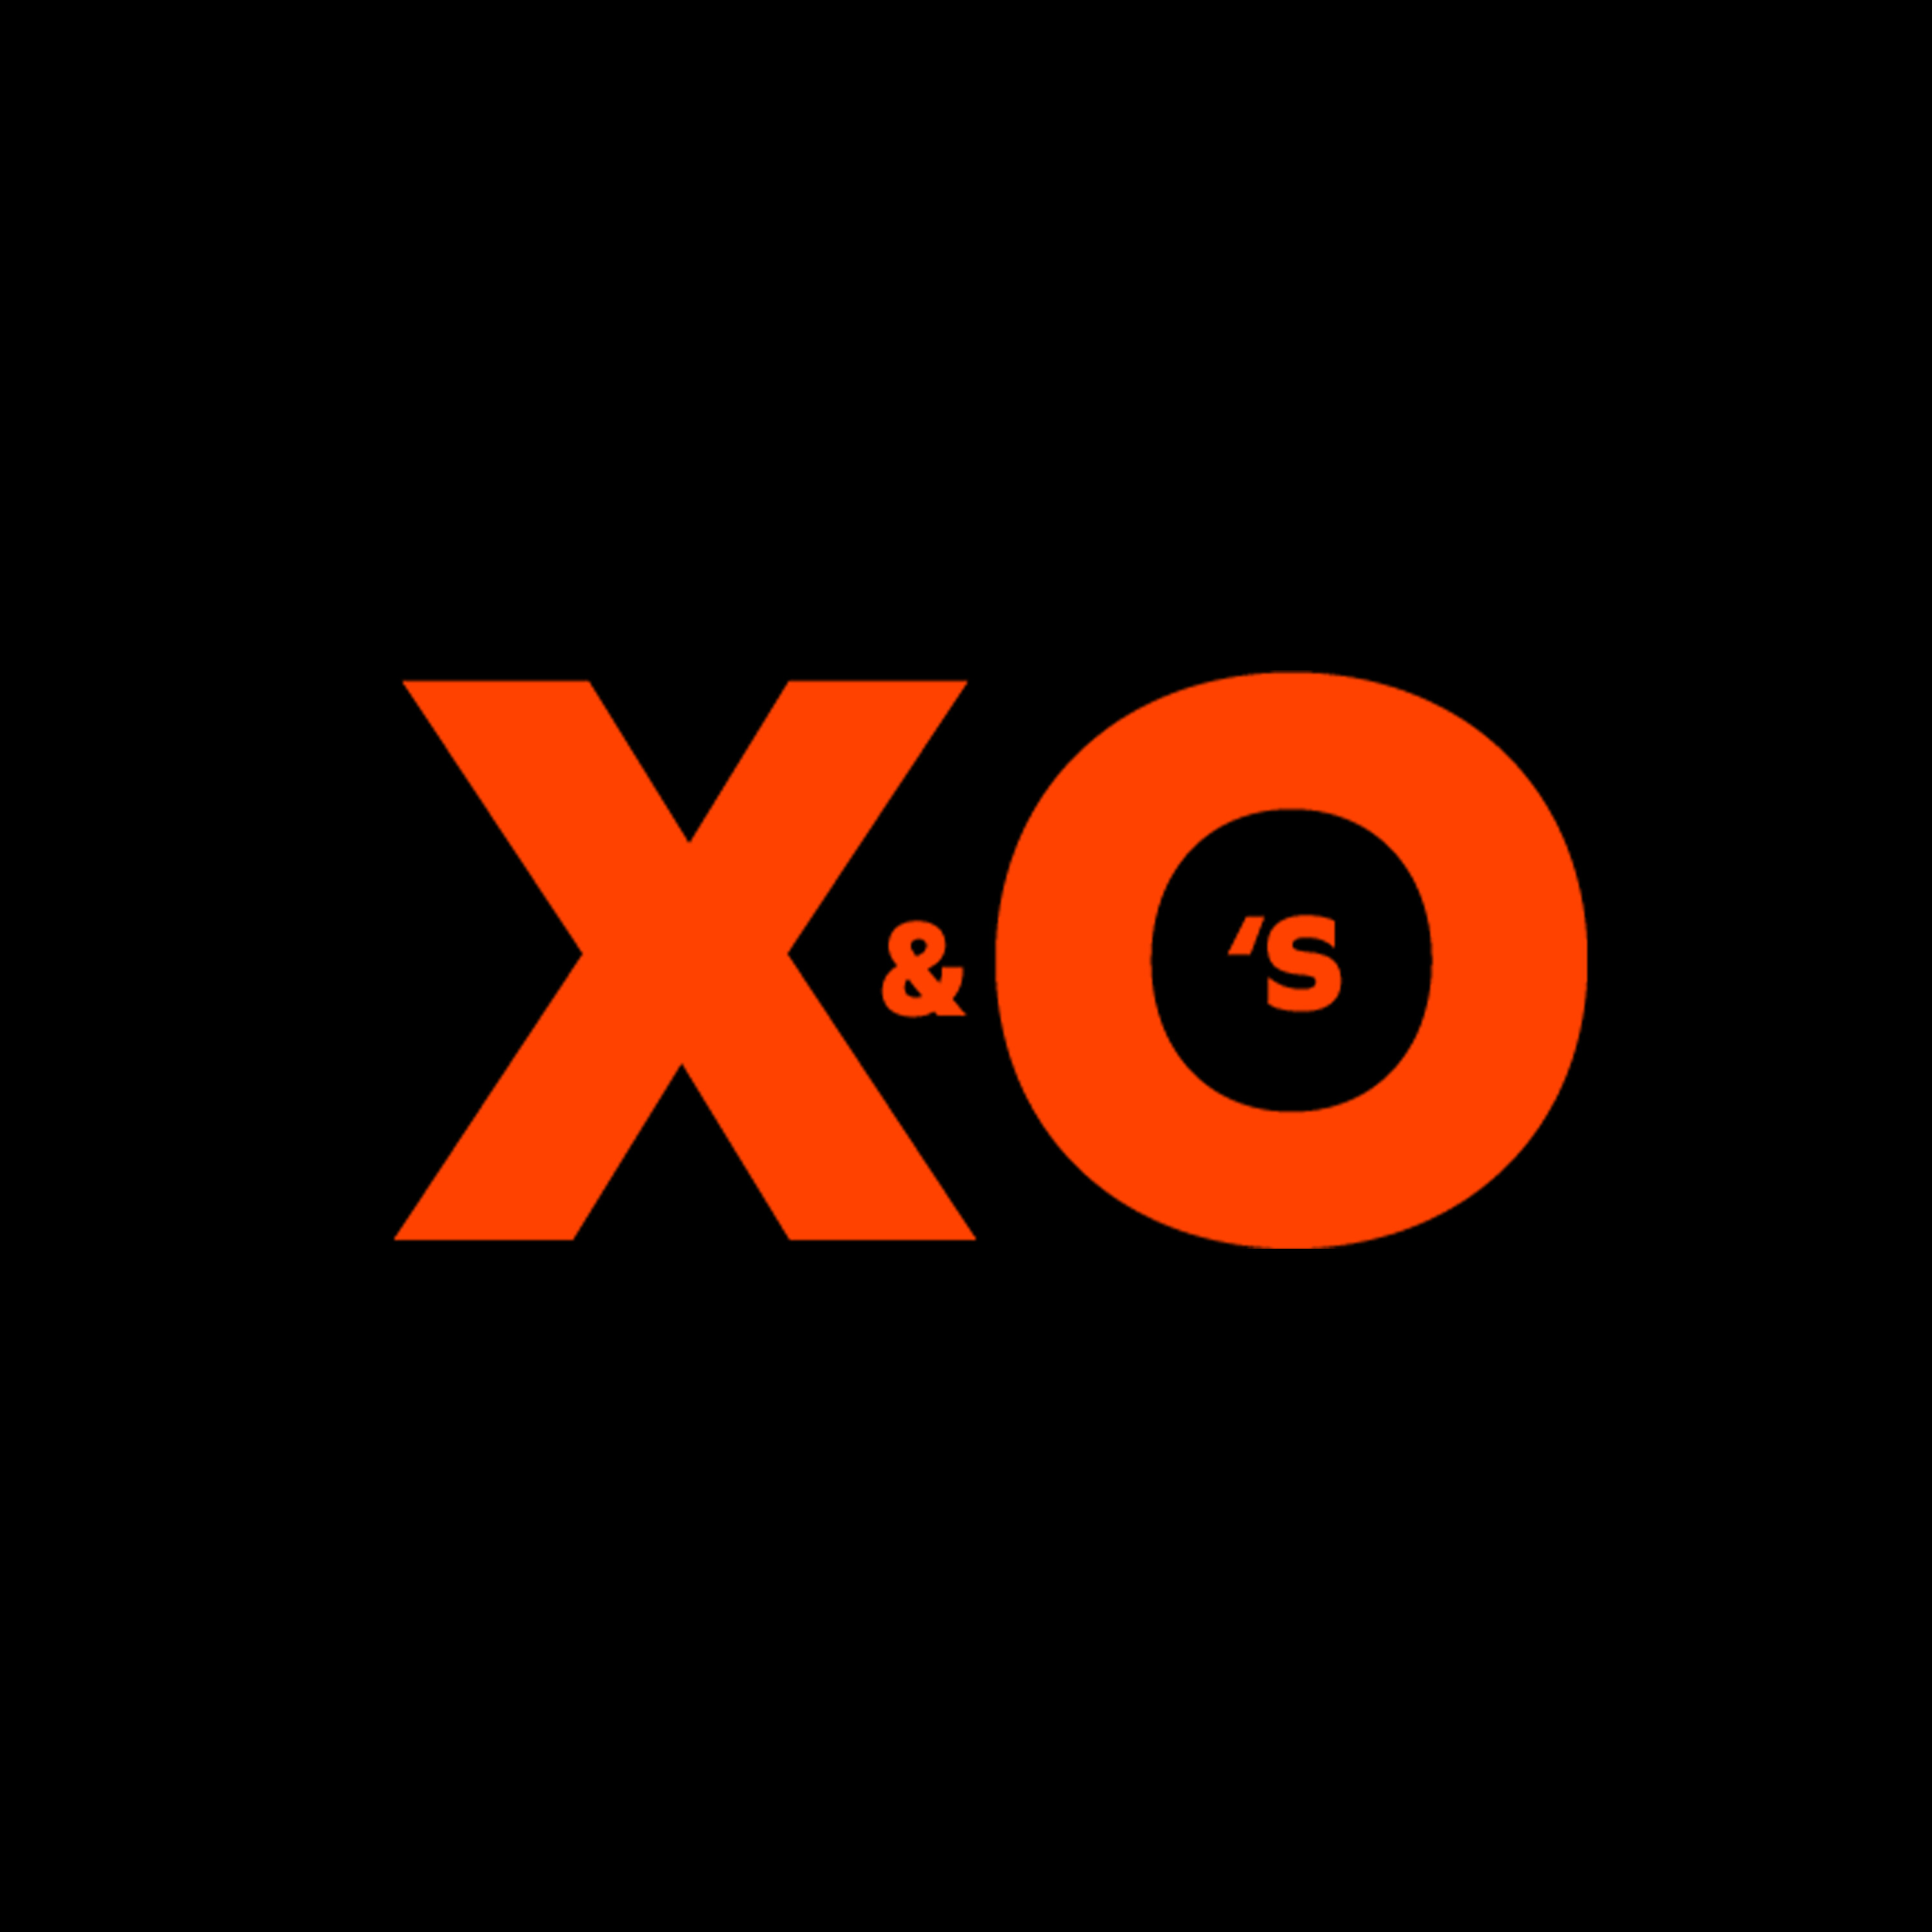 X&O’s - We got next (met de broertjes Hodge)